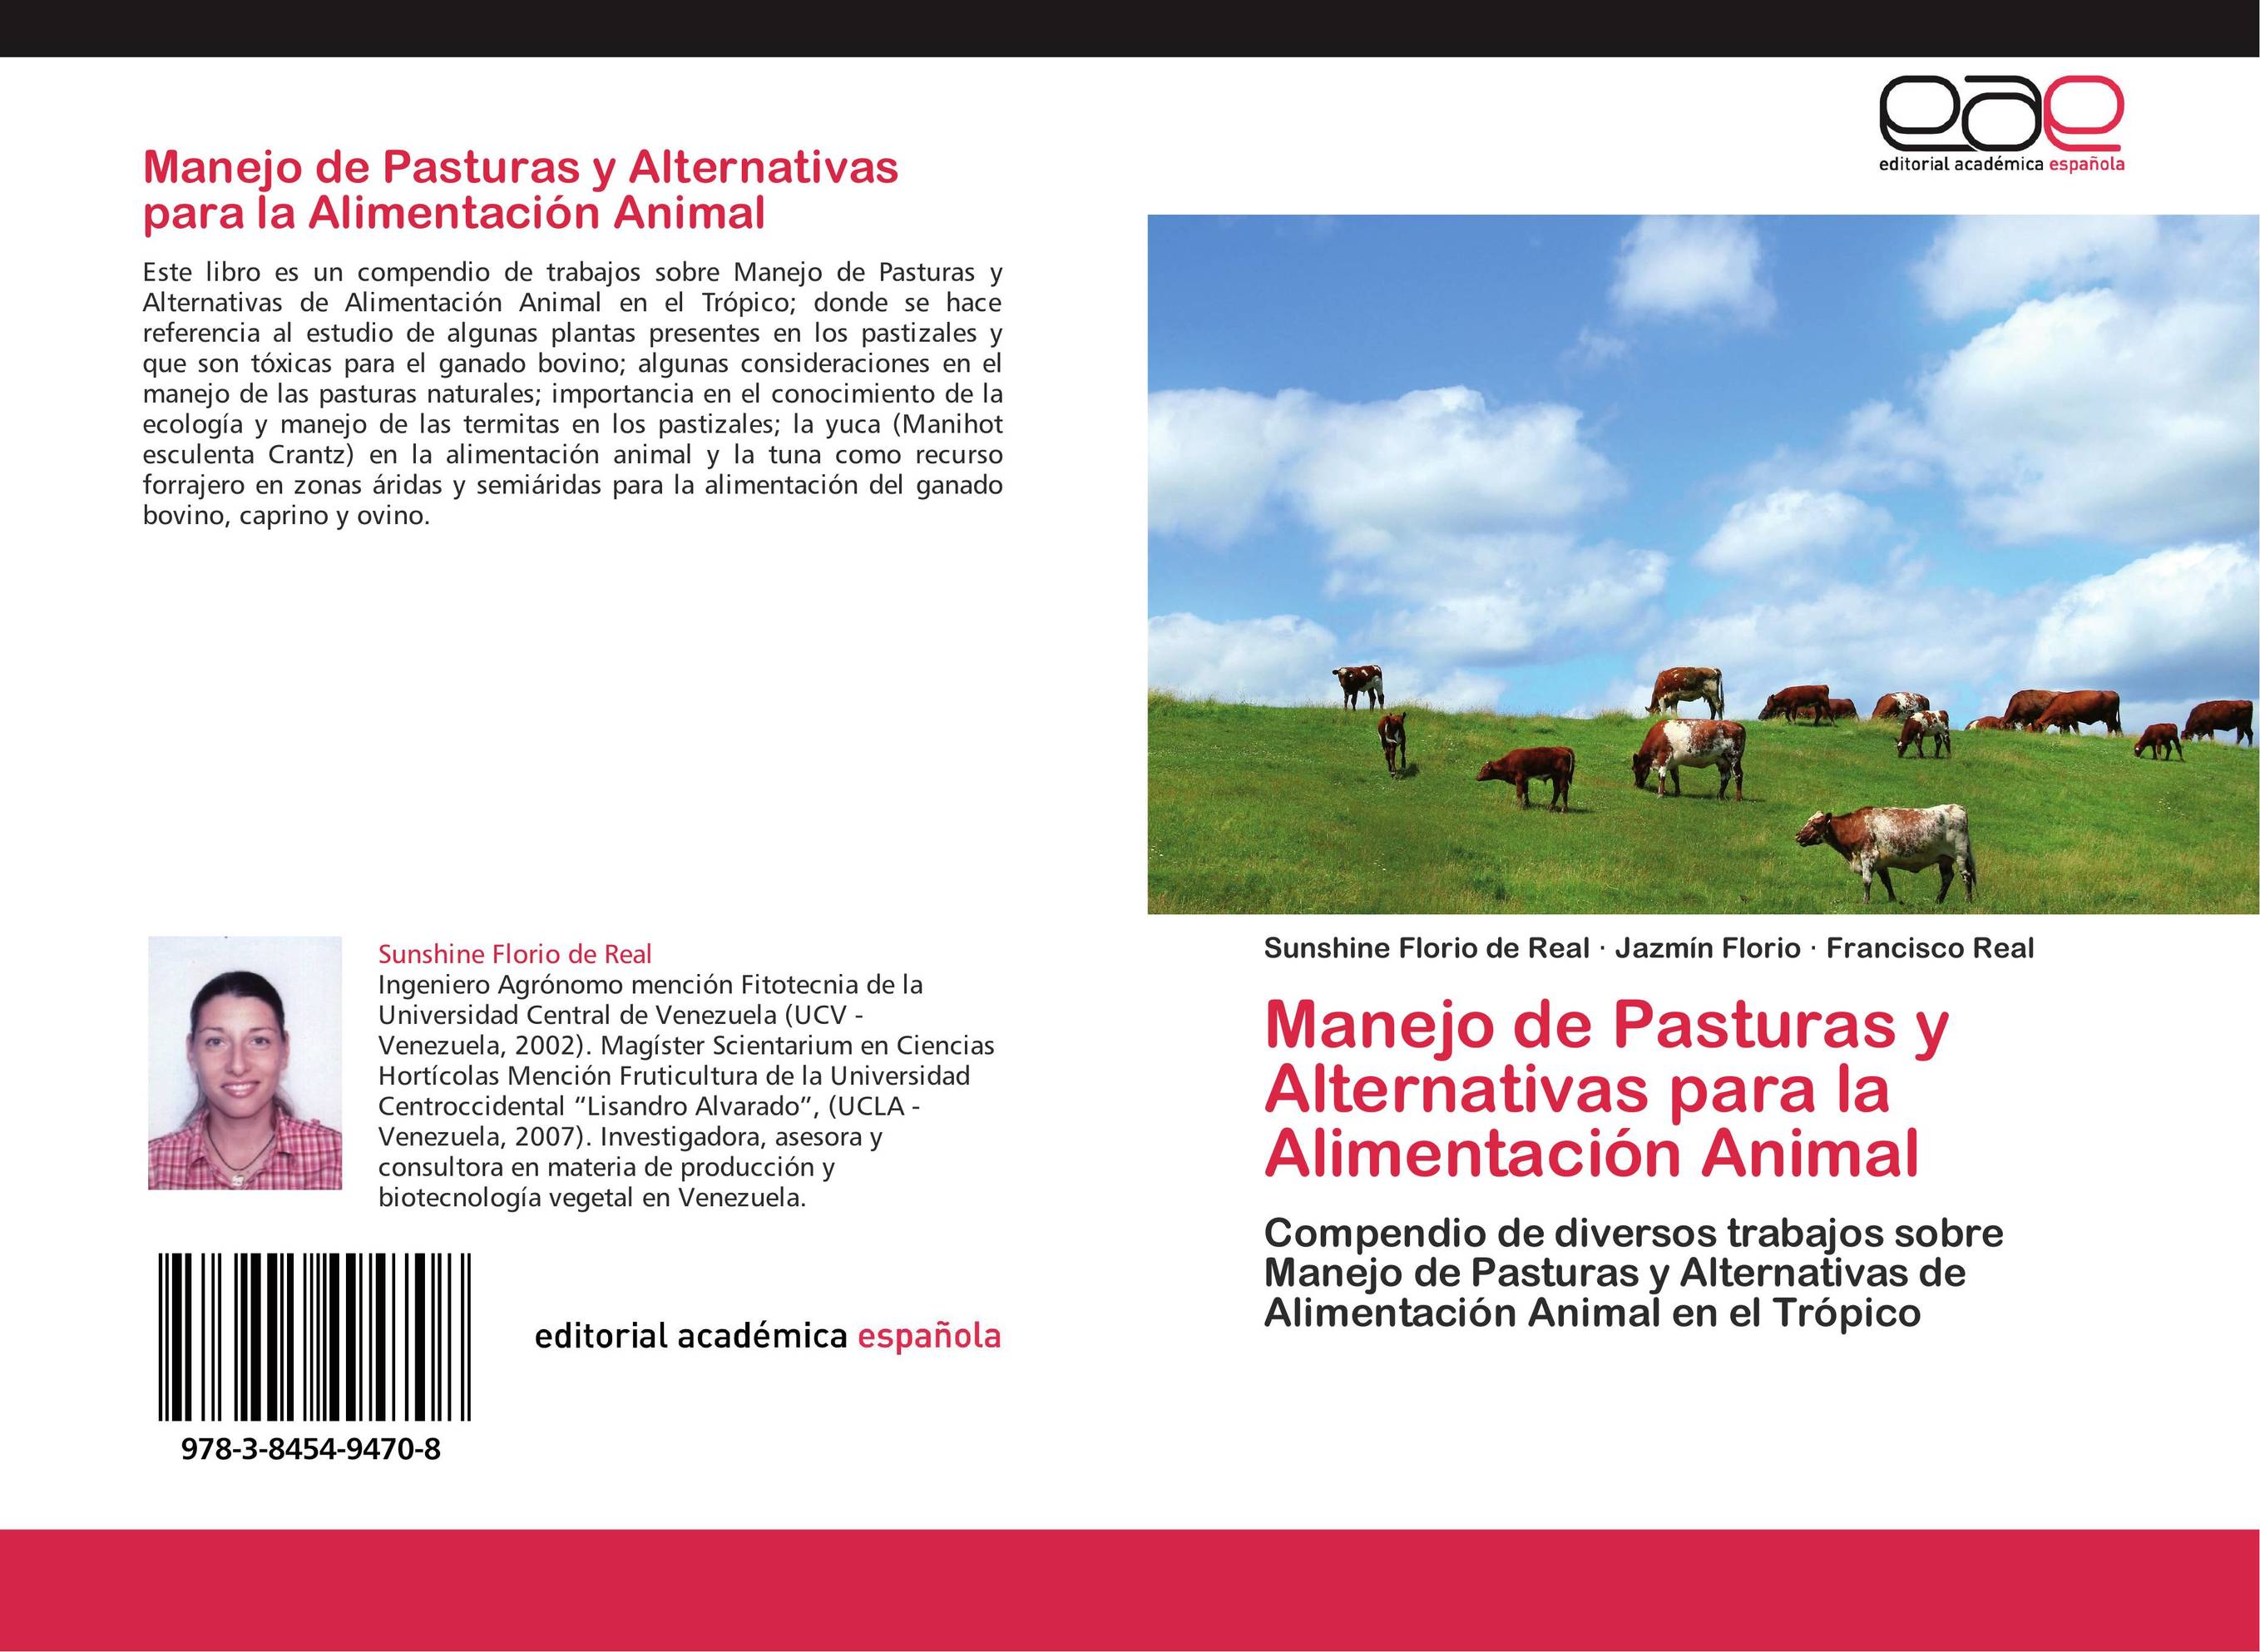 Manejo de Pasturas y Alternativas para la Alimentación Animal